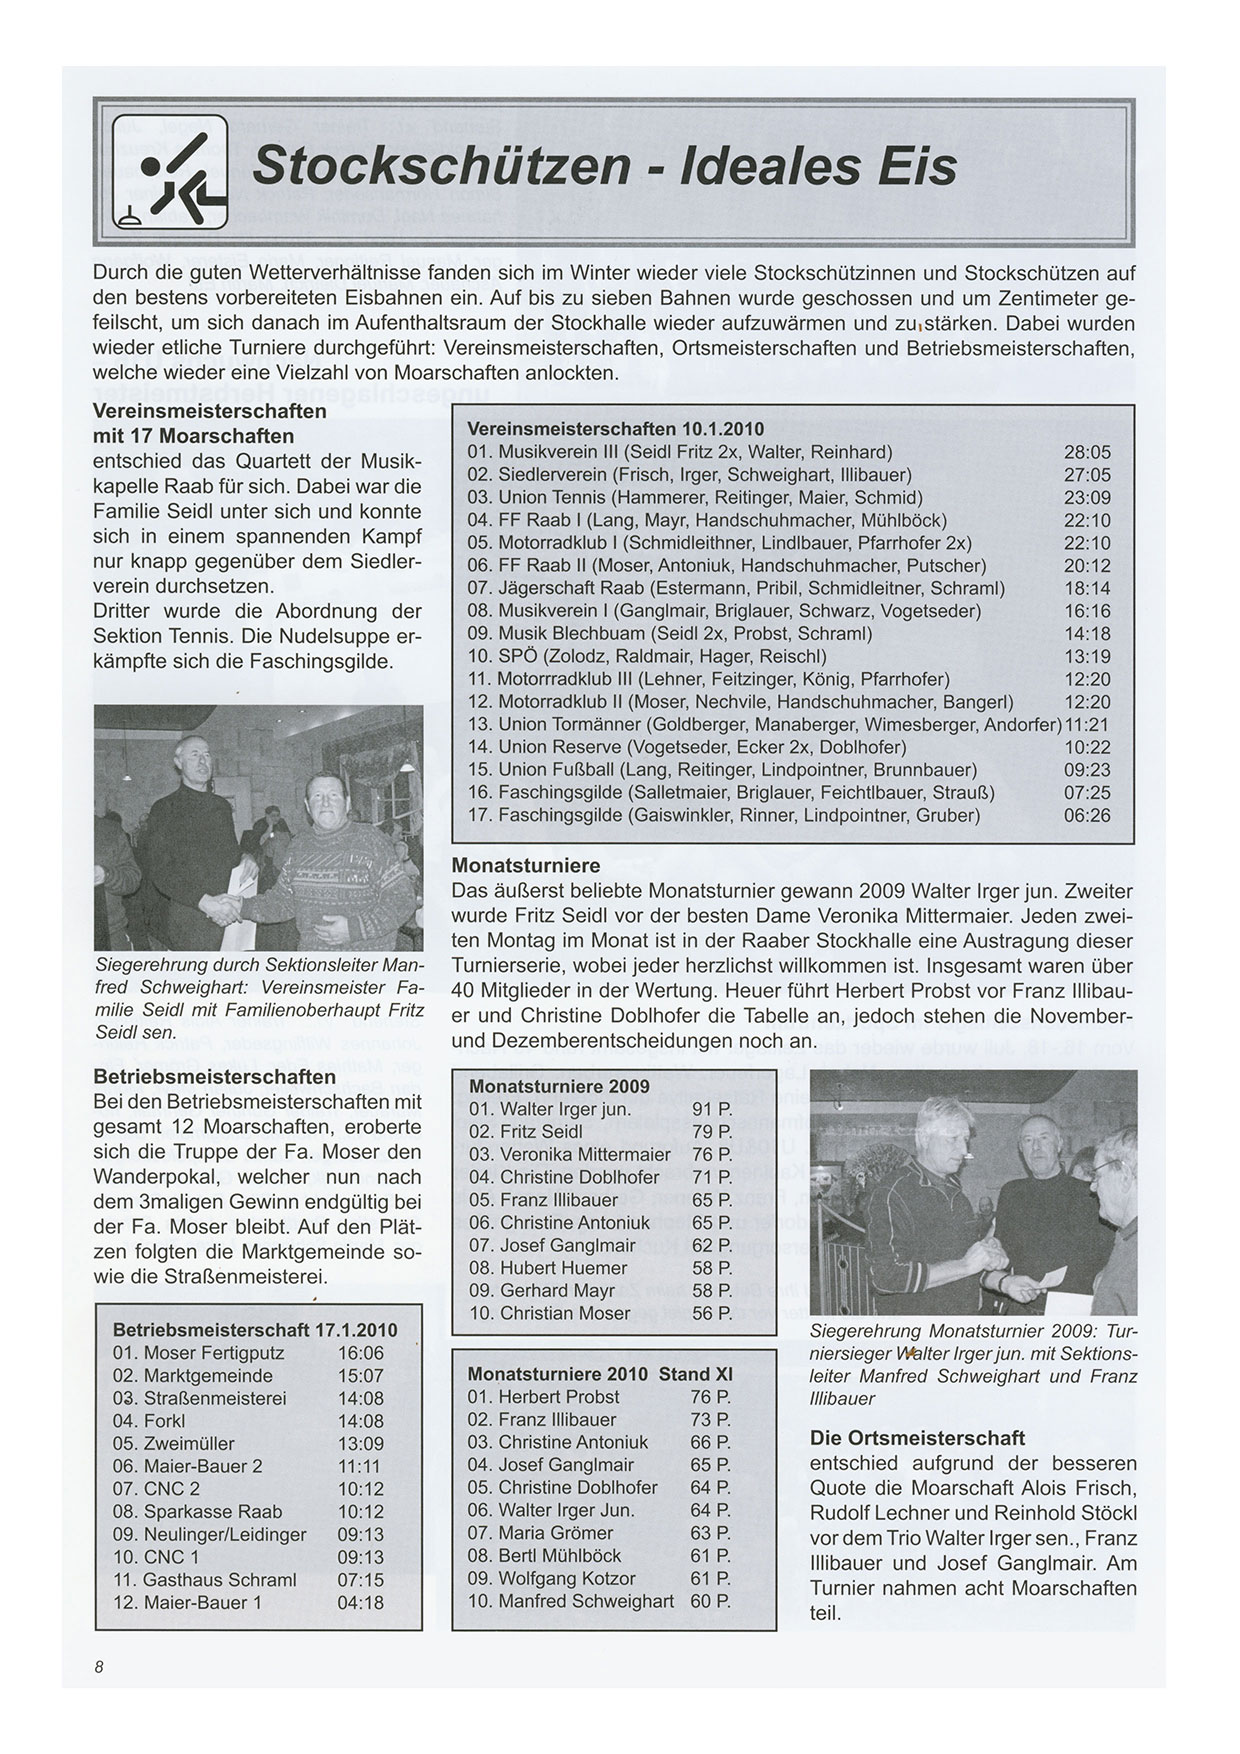 Unionzeitung 2010 - Seite 08